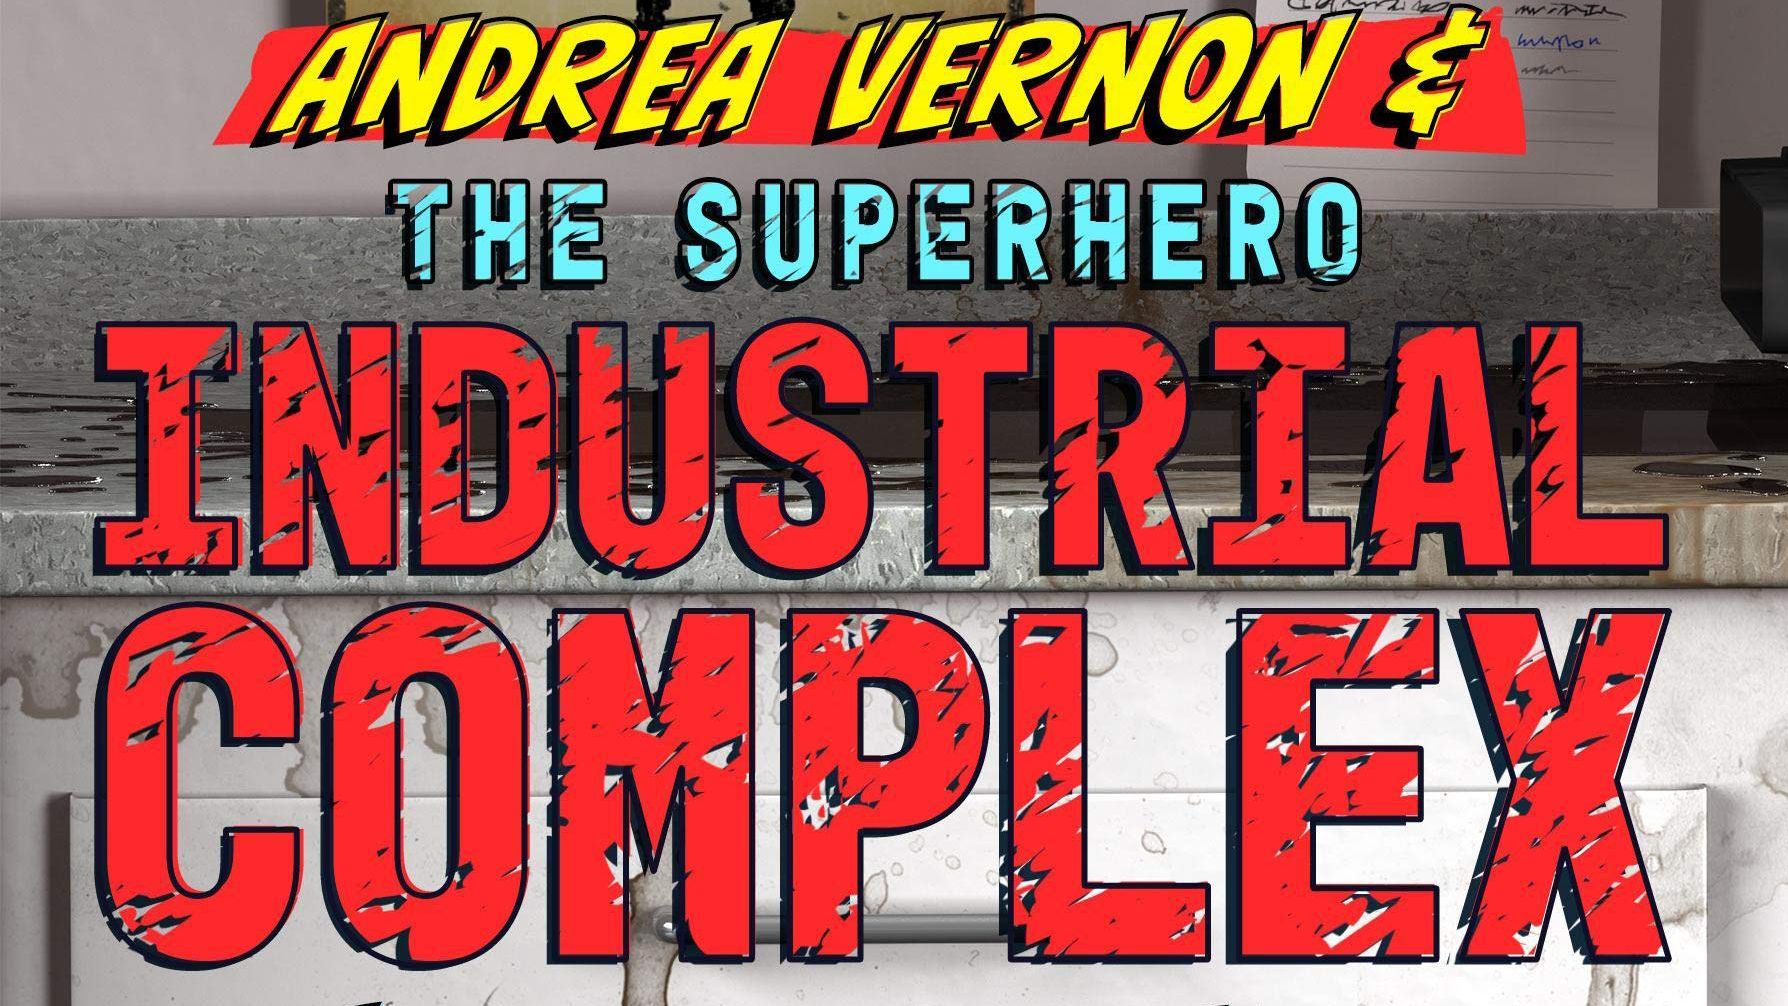 Andrea Vernon and the Superhero-Industrial Complex audiobook - Andrea Vernon